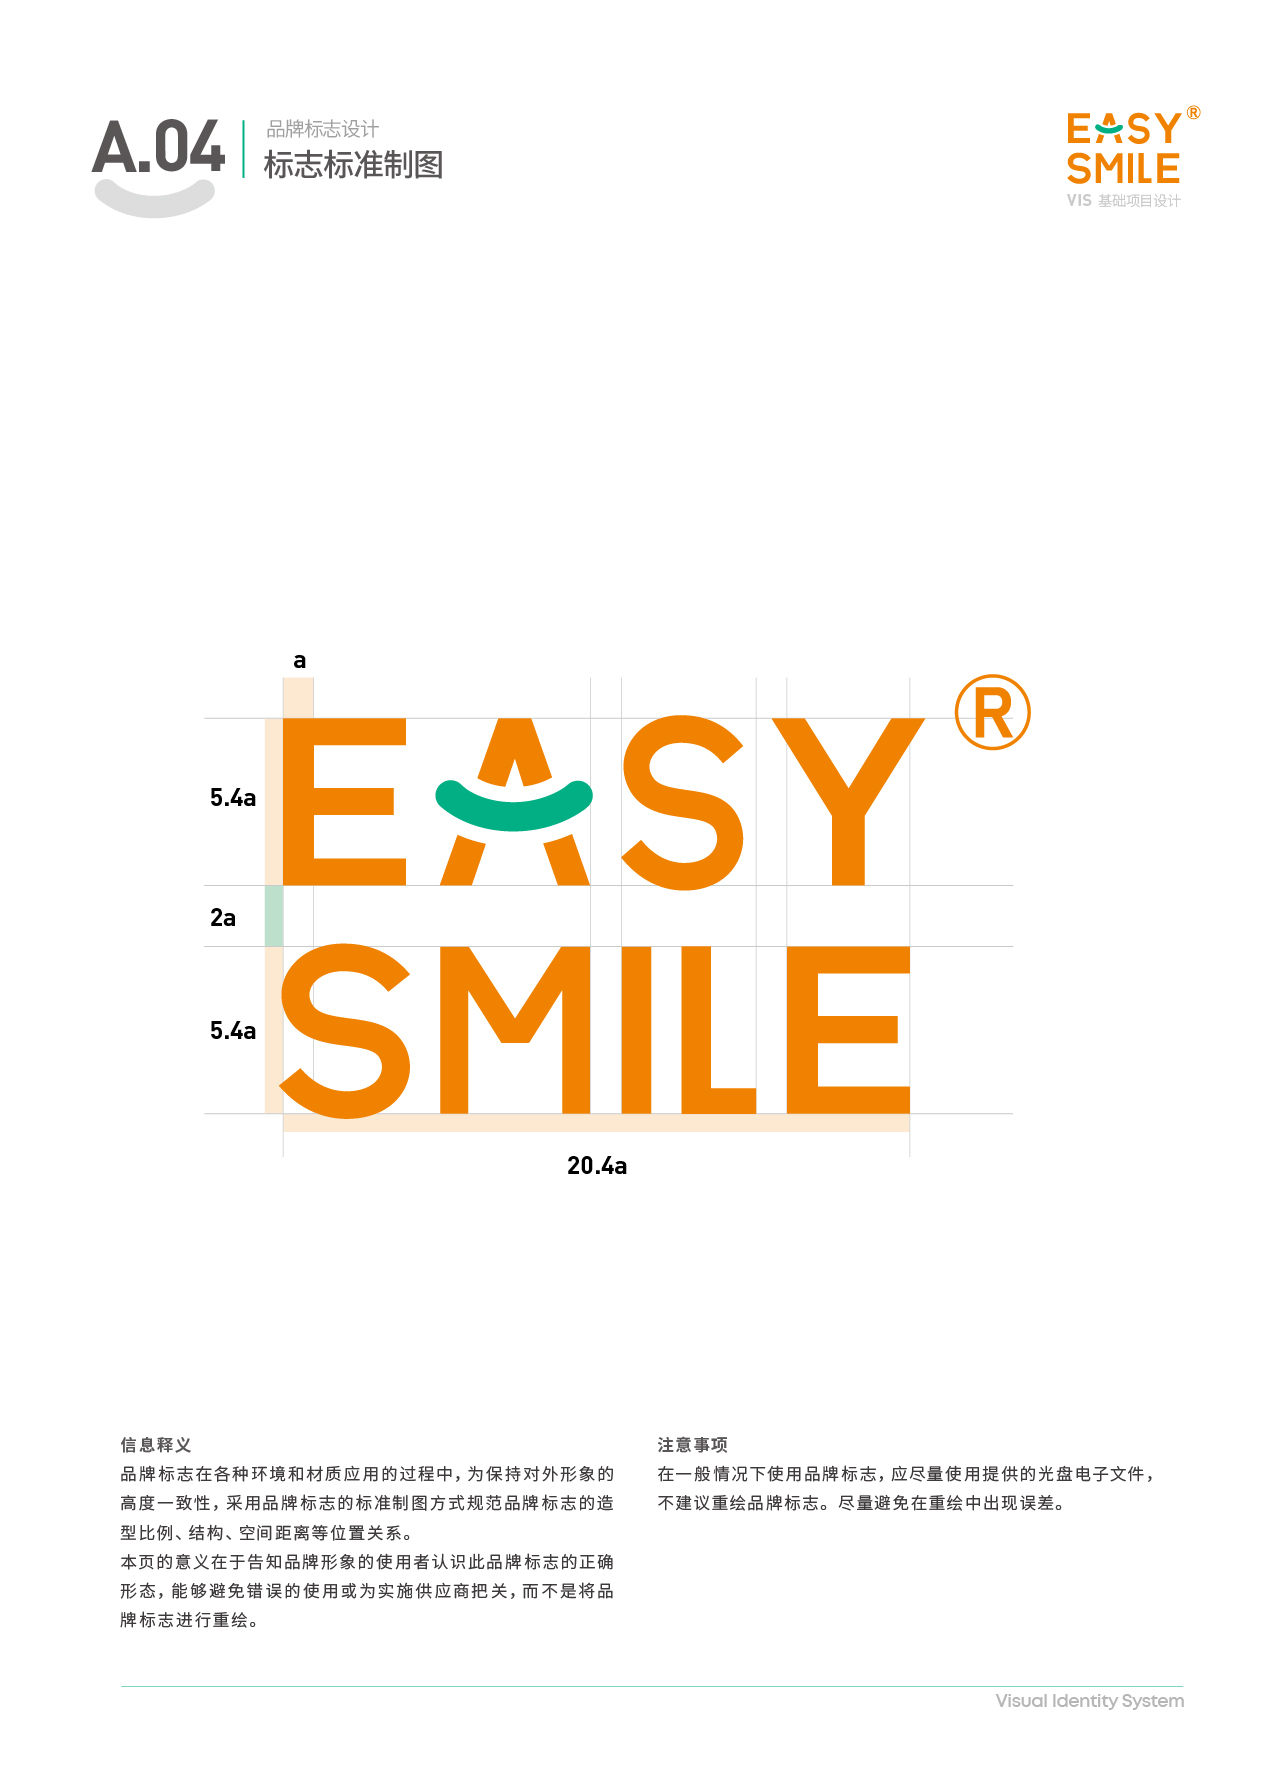 Easysmile 轻松笑品牌VIS图7